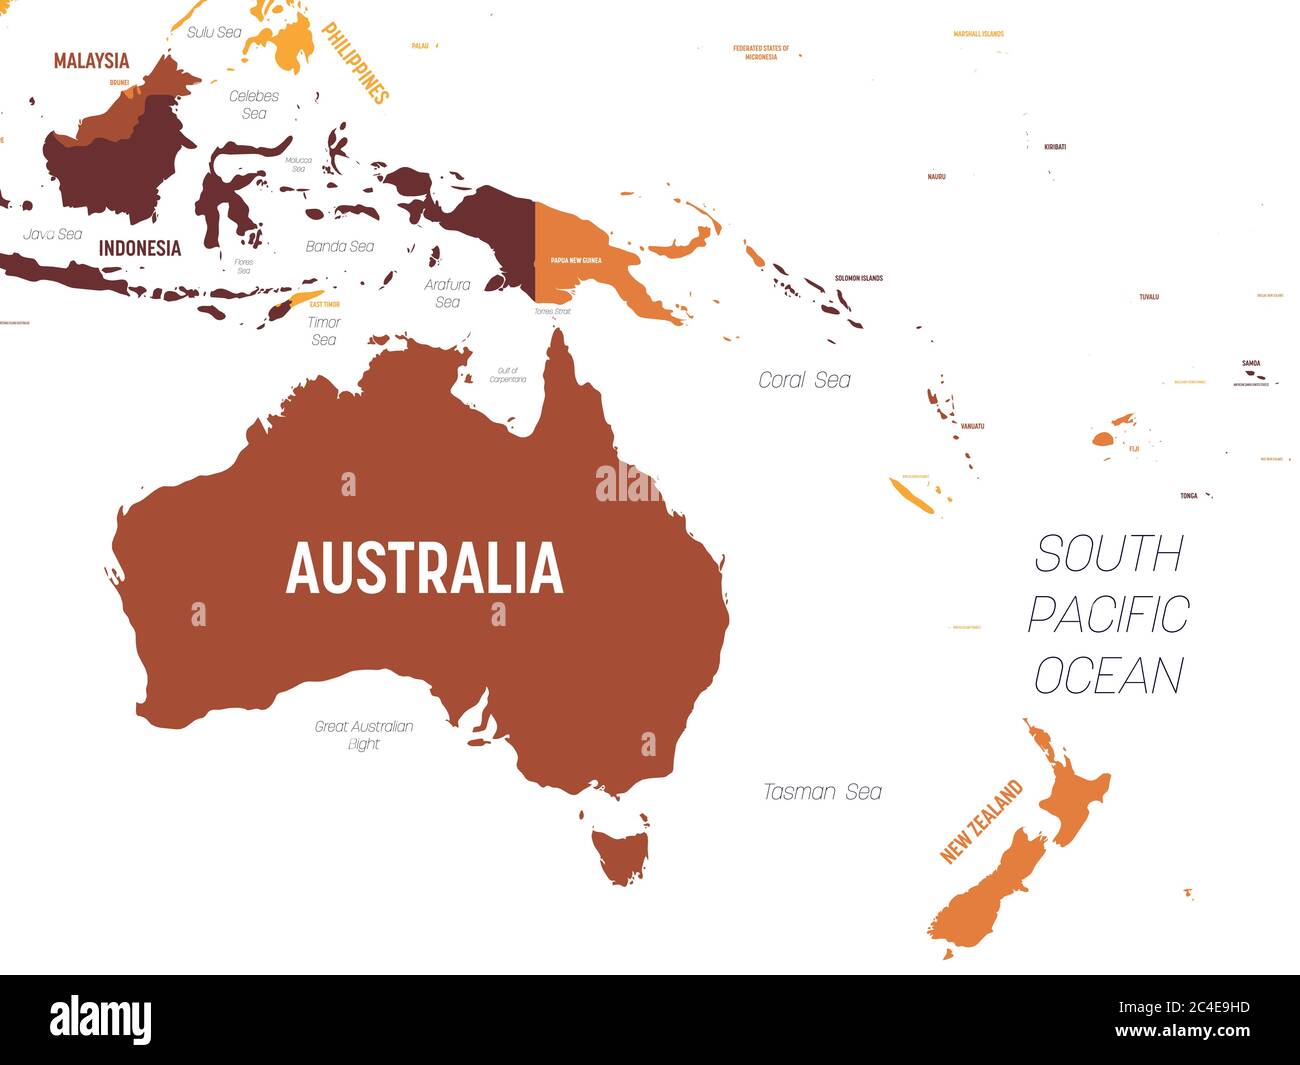 Australien und Ozeanien Karte - braun orange Farbton auf dunklem Hintergrund. Hoch detaillierte politische Karte der australischen und pazifischen Region mit Land-, Meer- und Meeresnamen Kennzeichnung. Stock Vektor